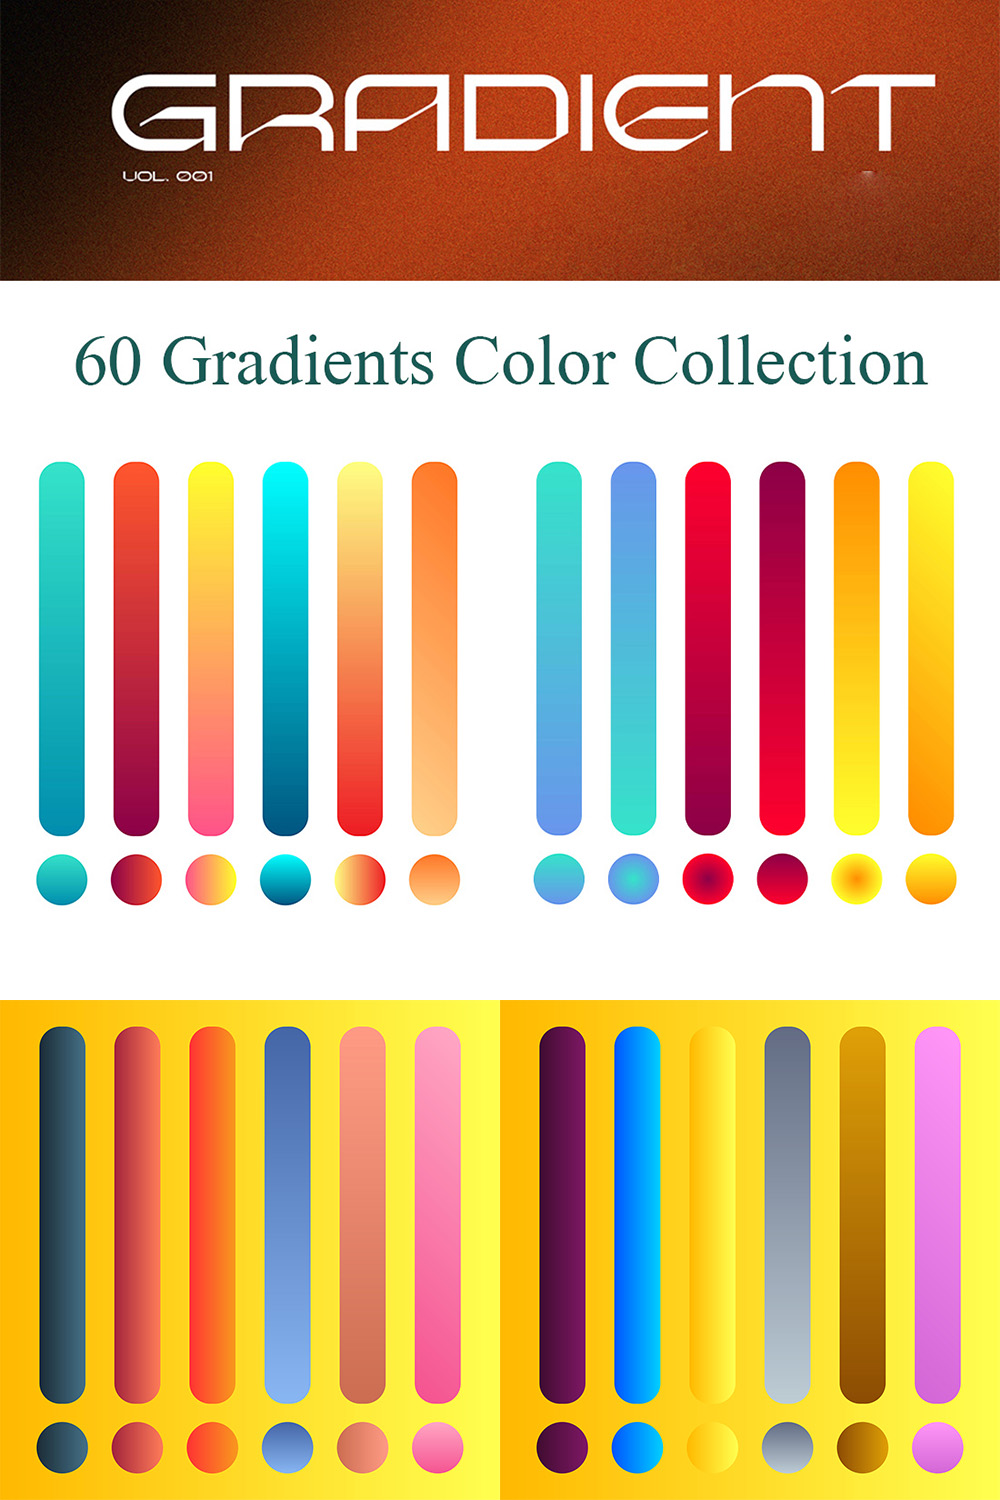 Premium Gradients Colors Pack Pinterest image.